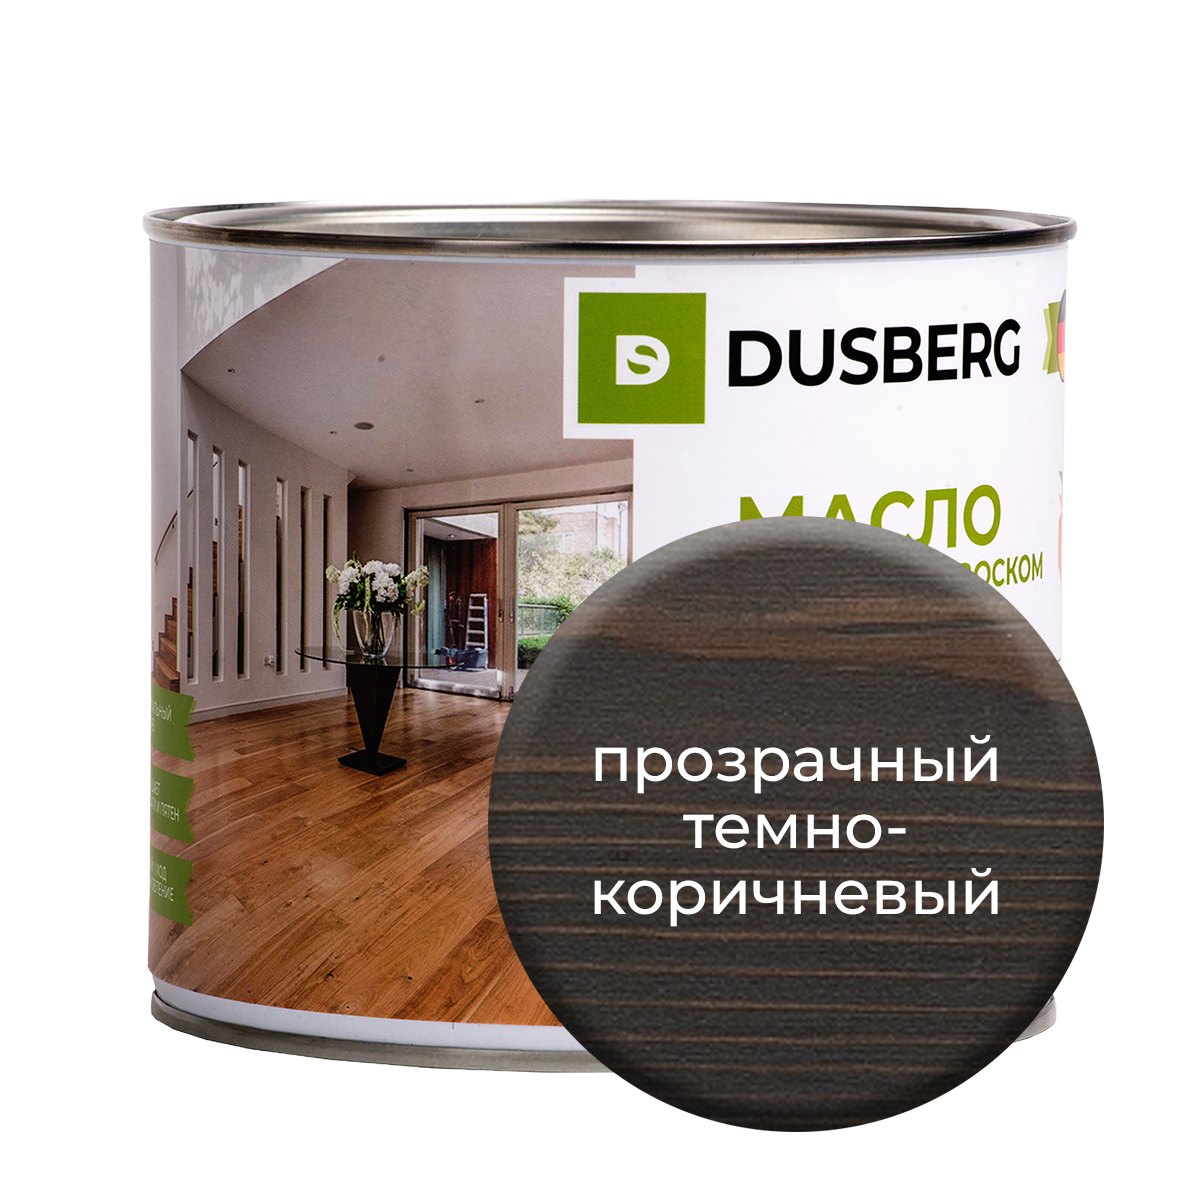 Масло Dusberg с твердым воском на бесцветной основе, 2 л Прозрачный темно-коричневый